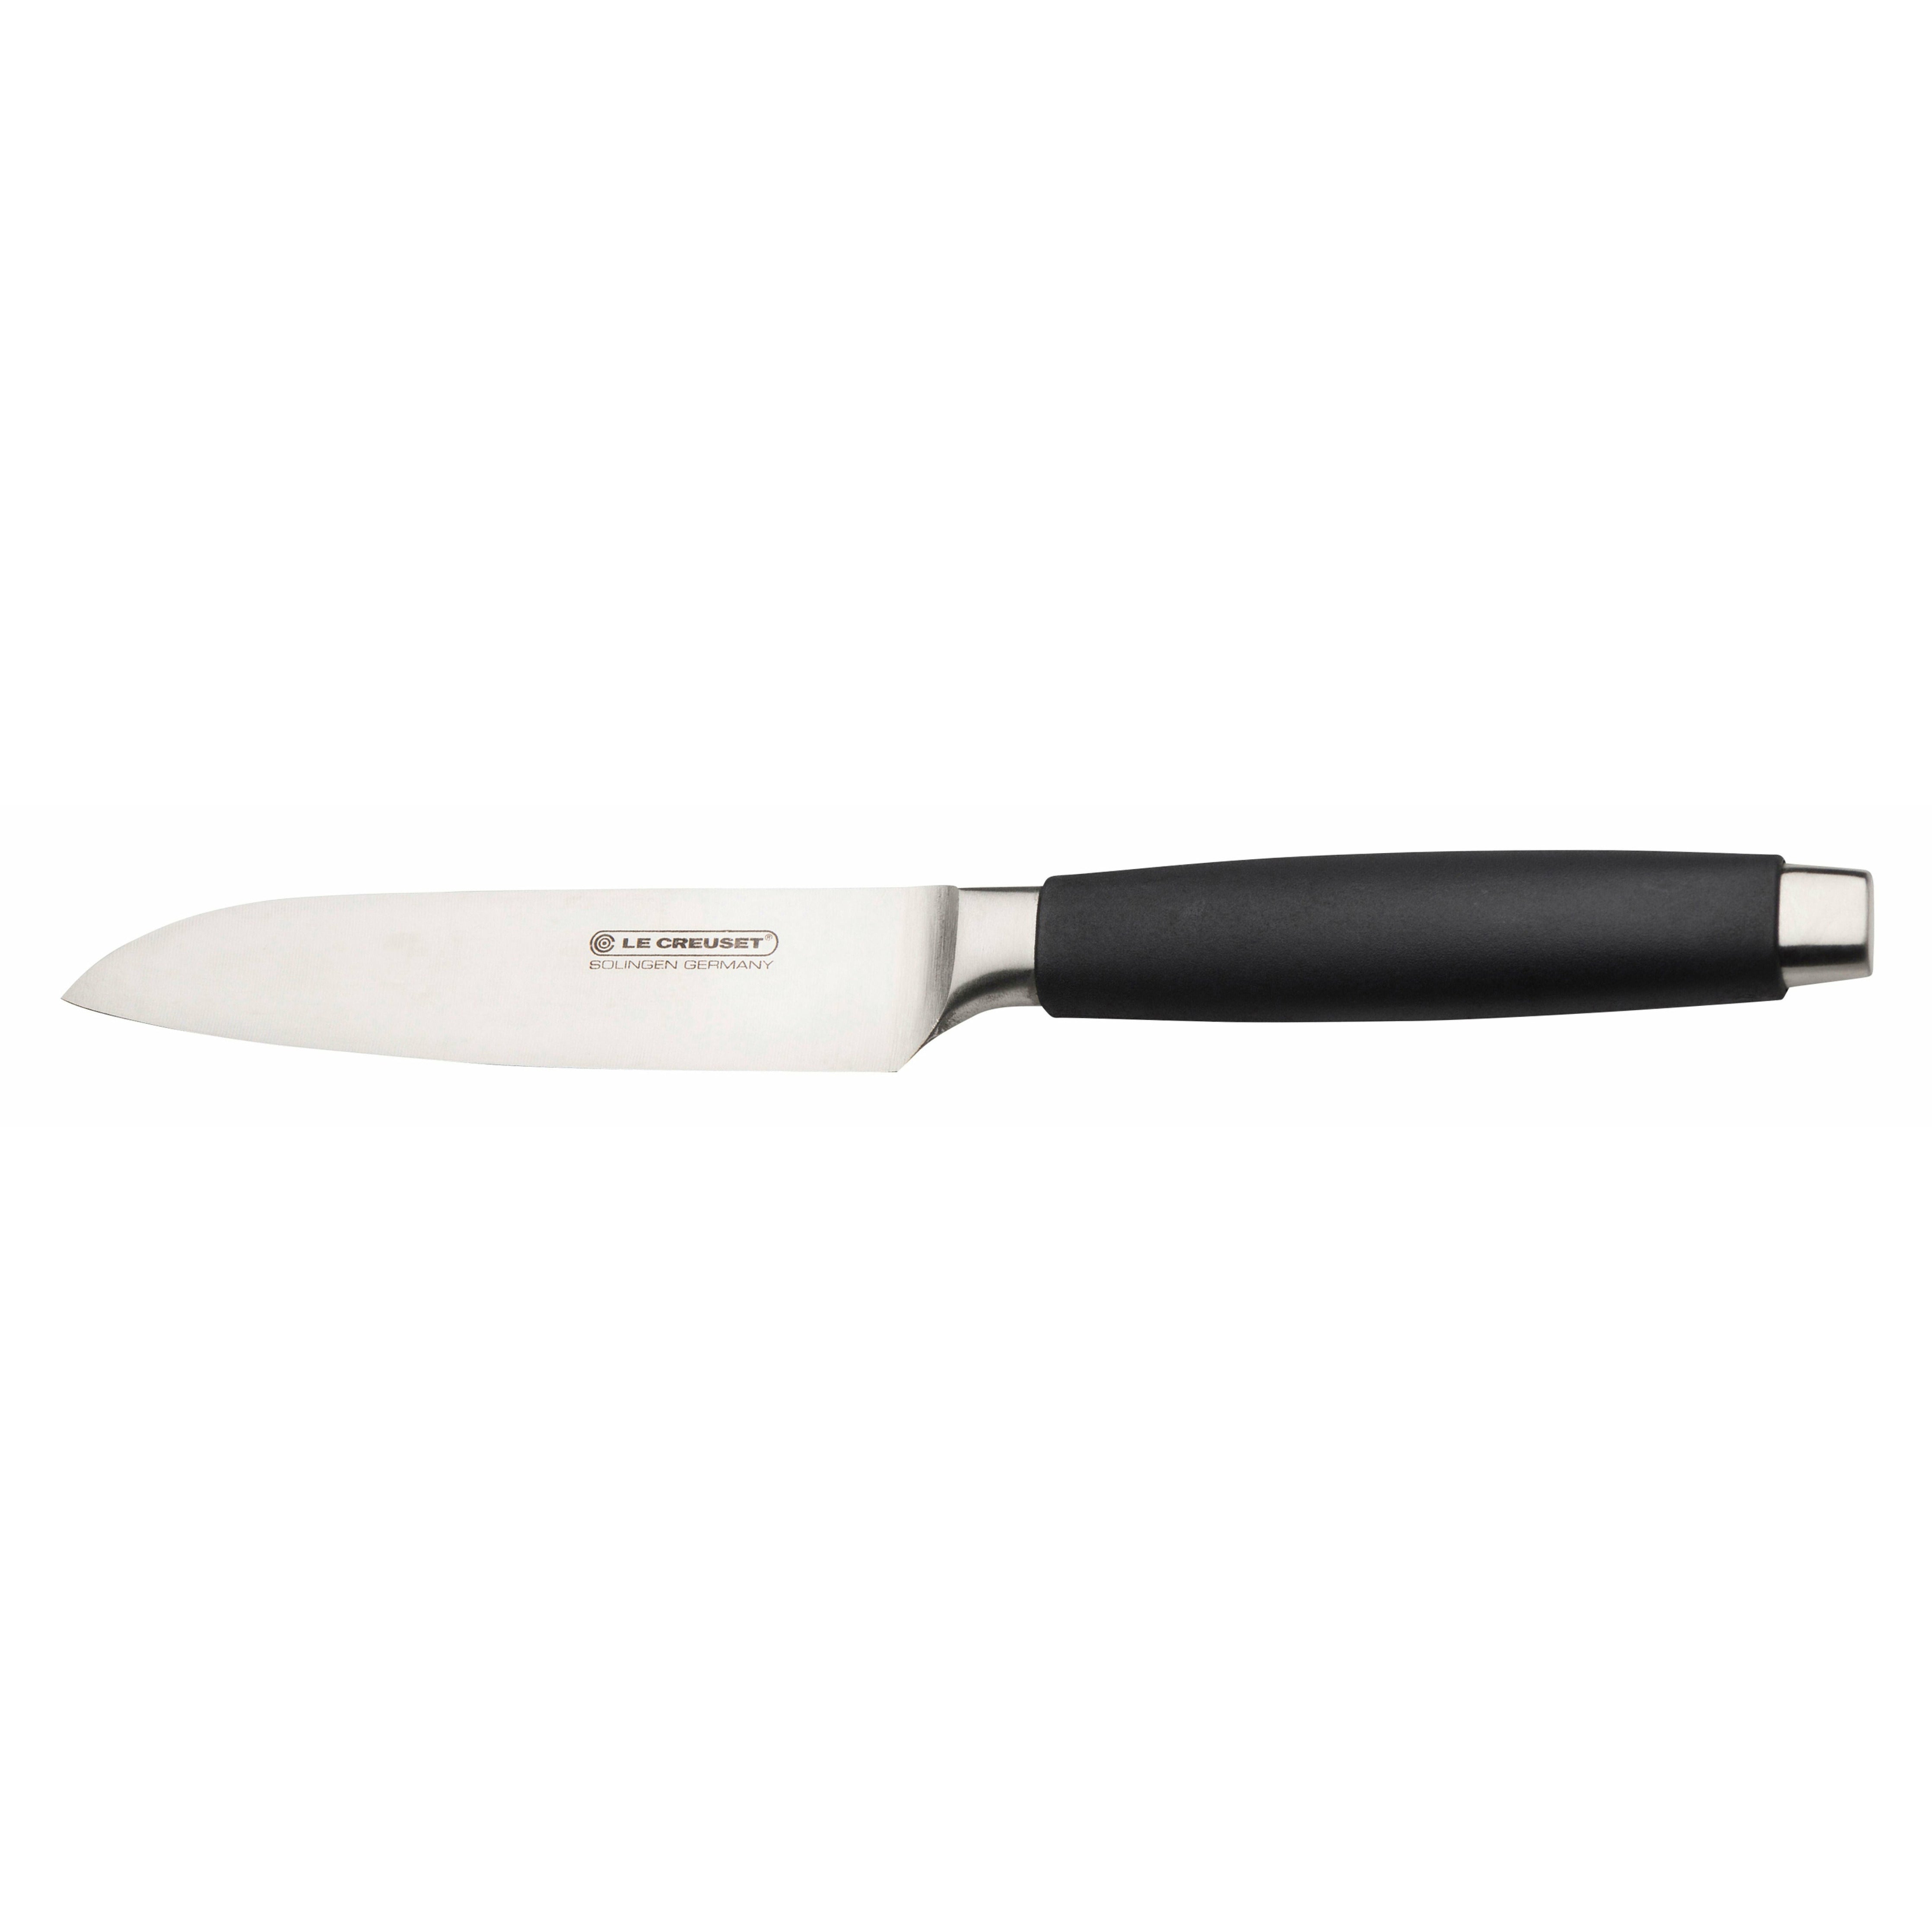 Le Creuset Santoku刀标准带有黑色手柄，13厘米